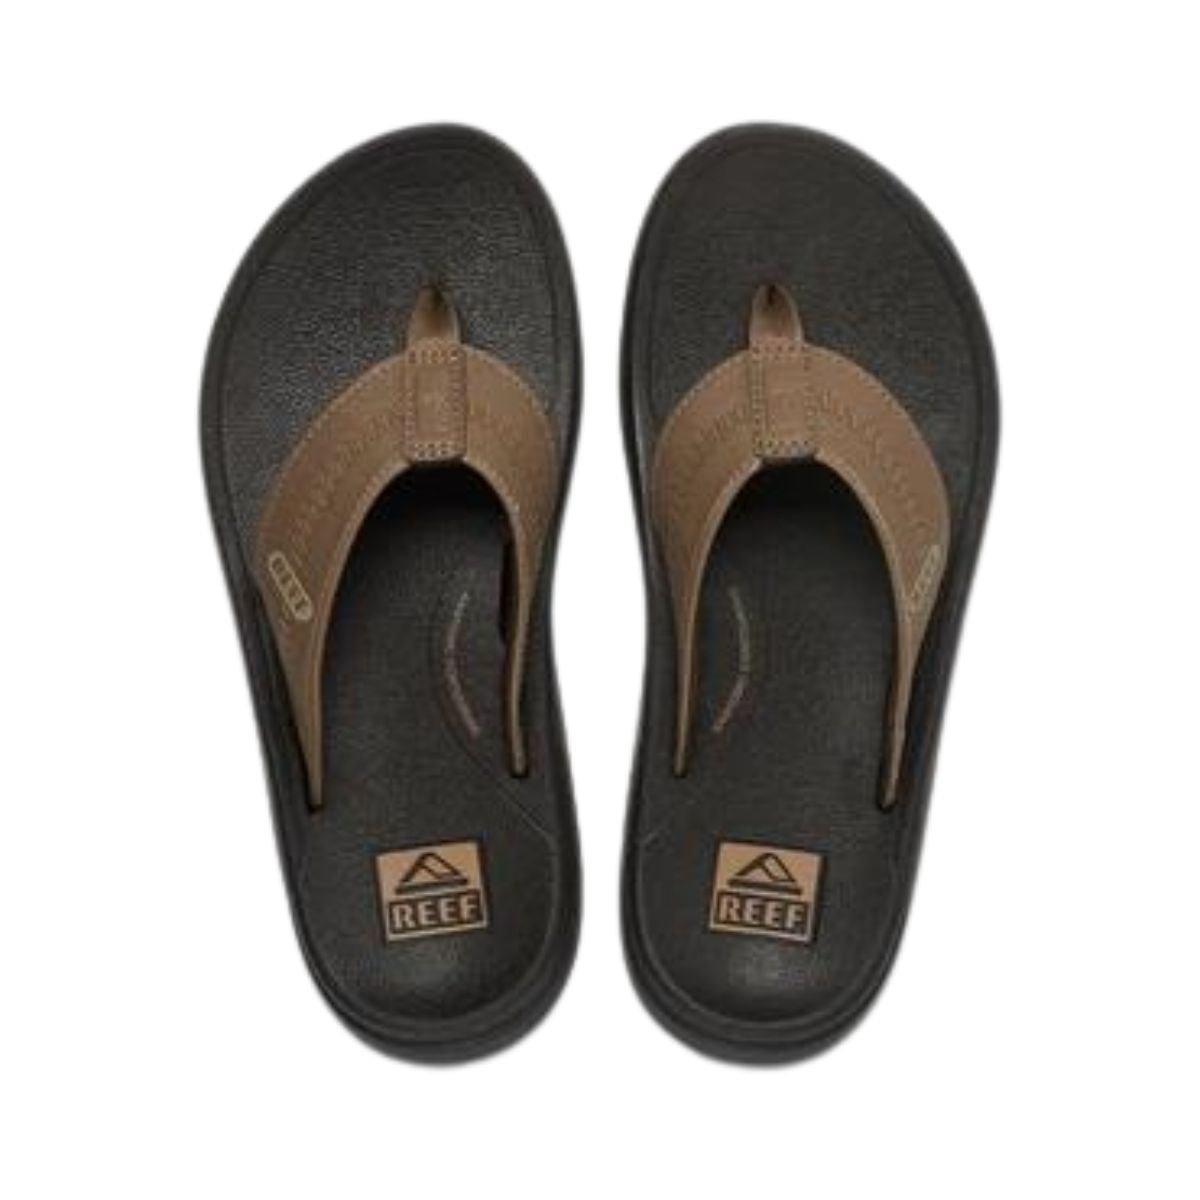 Reef Swellsole Cruiser Men's Sandal in Brown/Tan - BoardCo